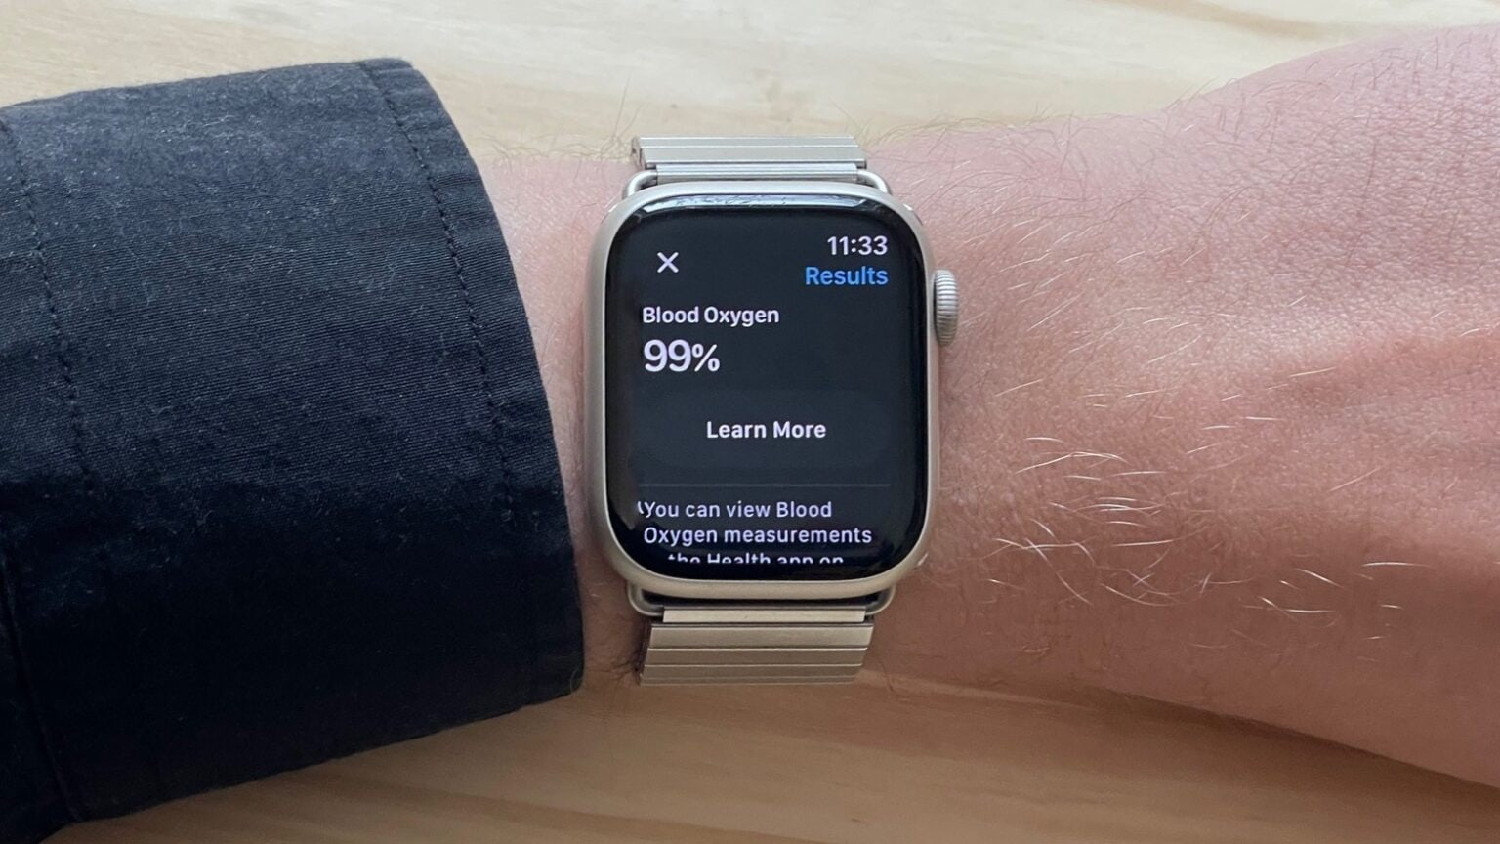 Blood Oxygen on Apple Watch